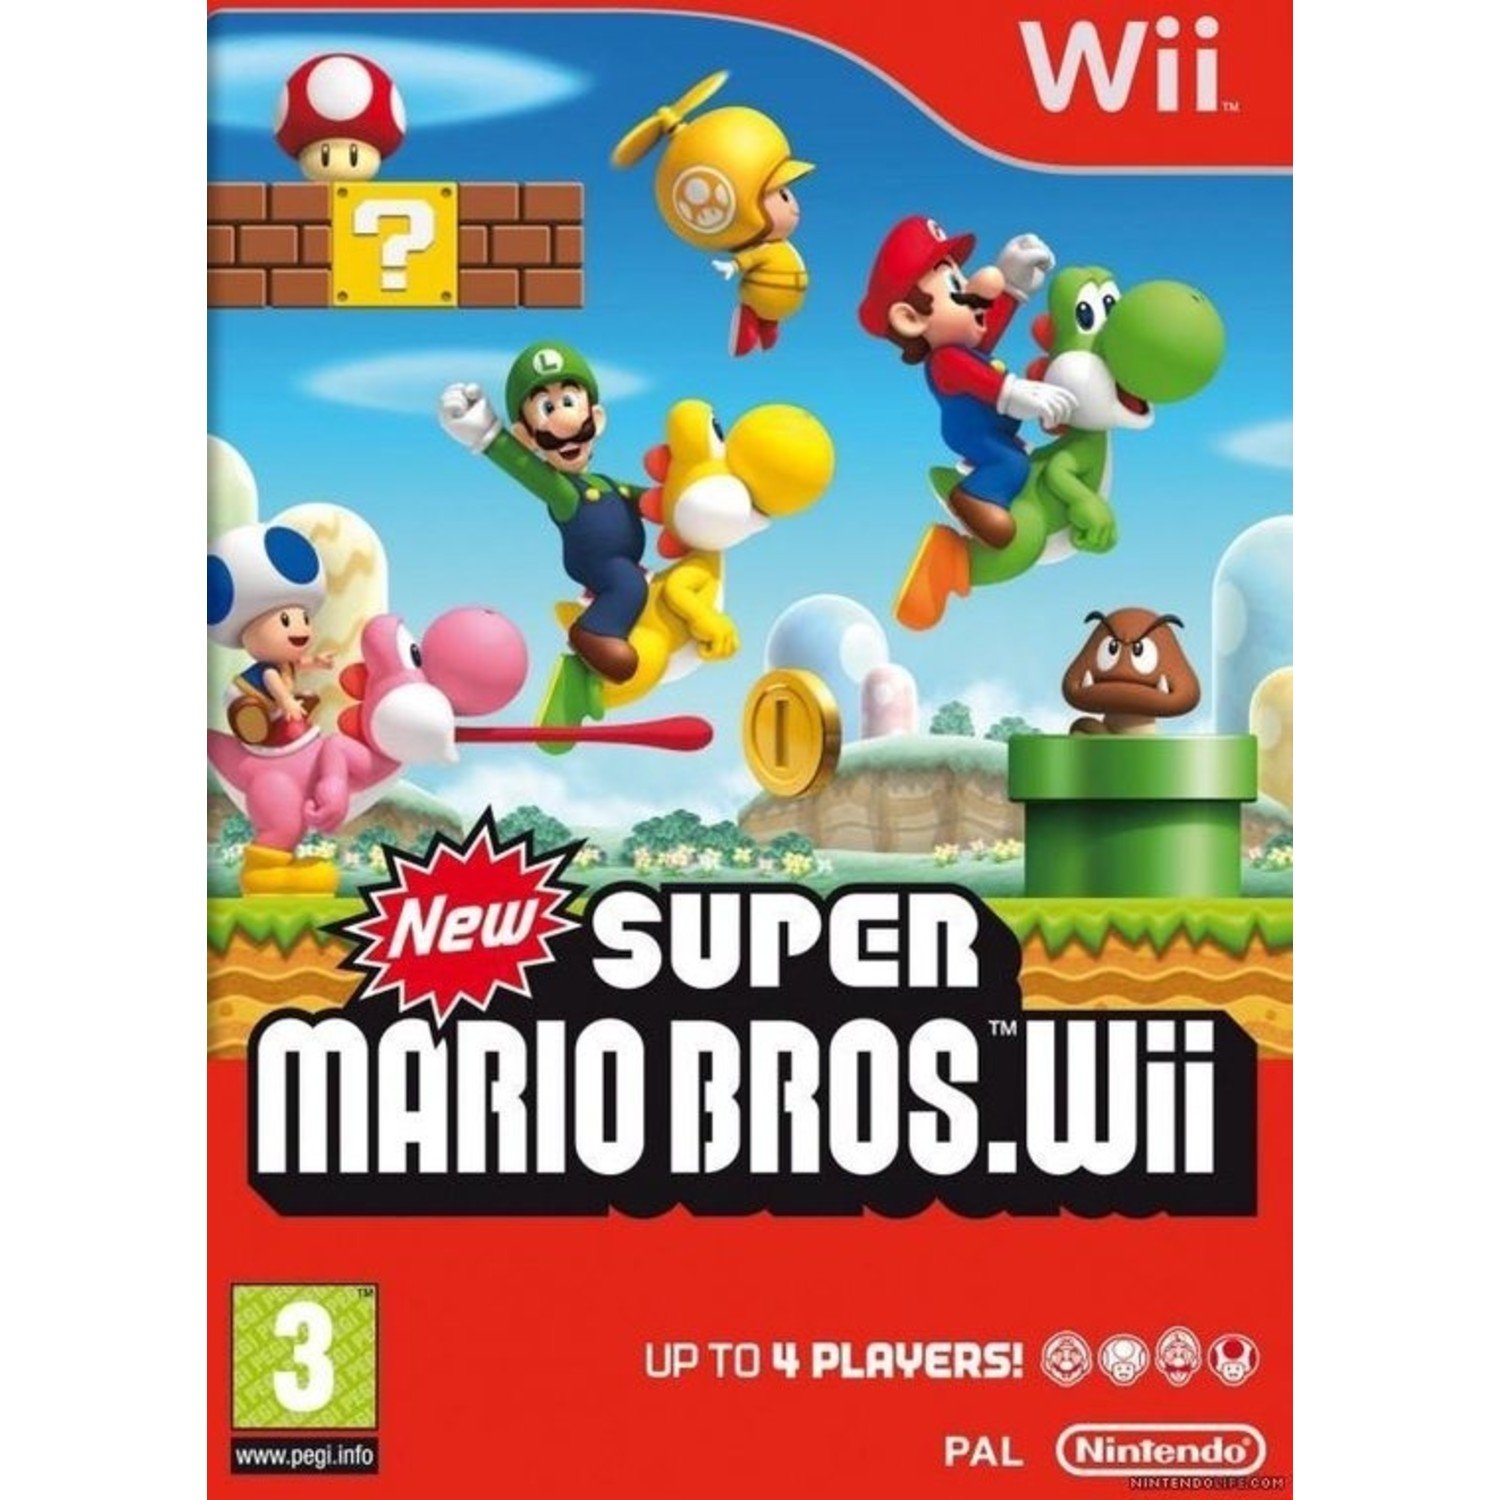 Eekhoorn verstoring heuvel New Super Mario Bros Wii voor de Nintendo Wii kopen bij Reway met garantie  - Reway.nl